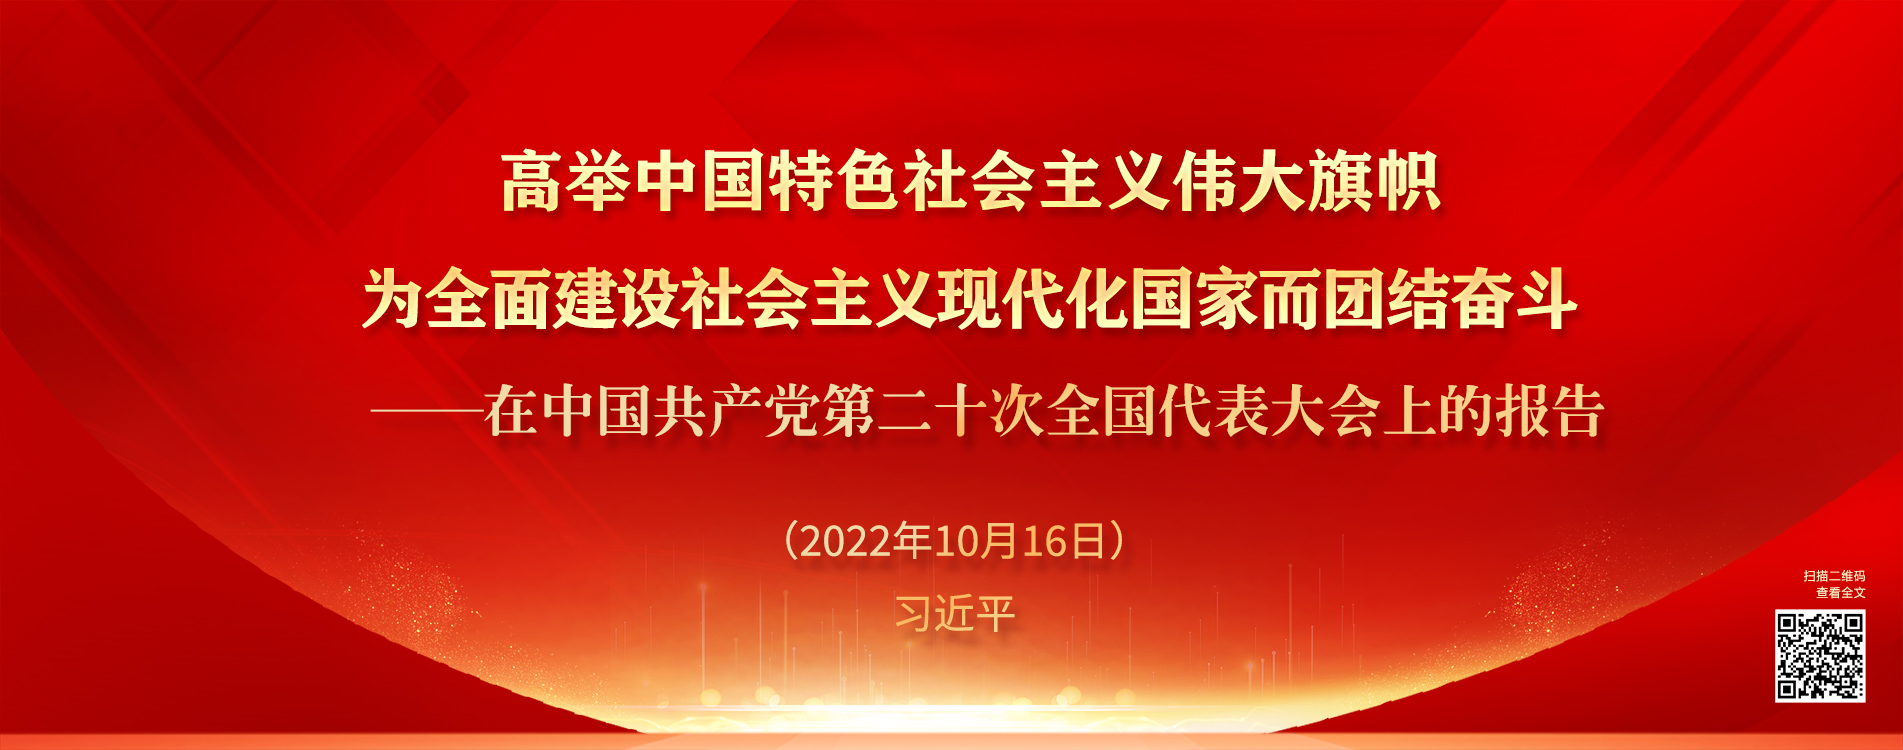 在中国共产党第二十次亚博足彩app代表大会上的报告.jpg